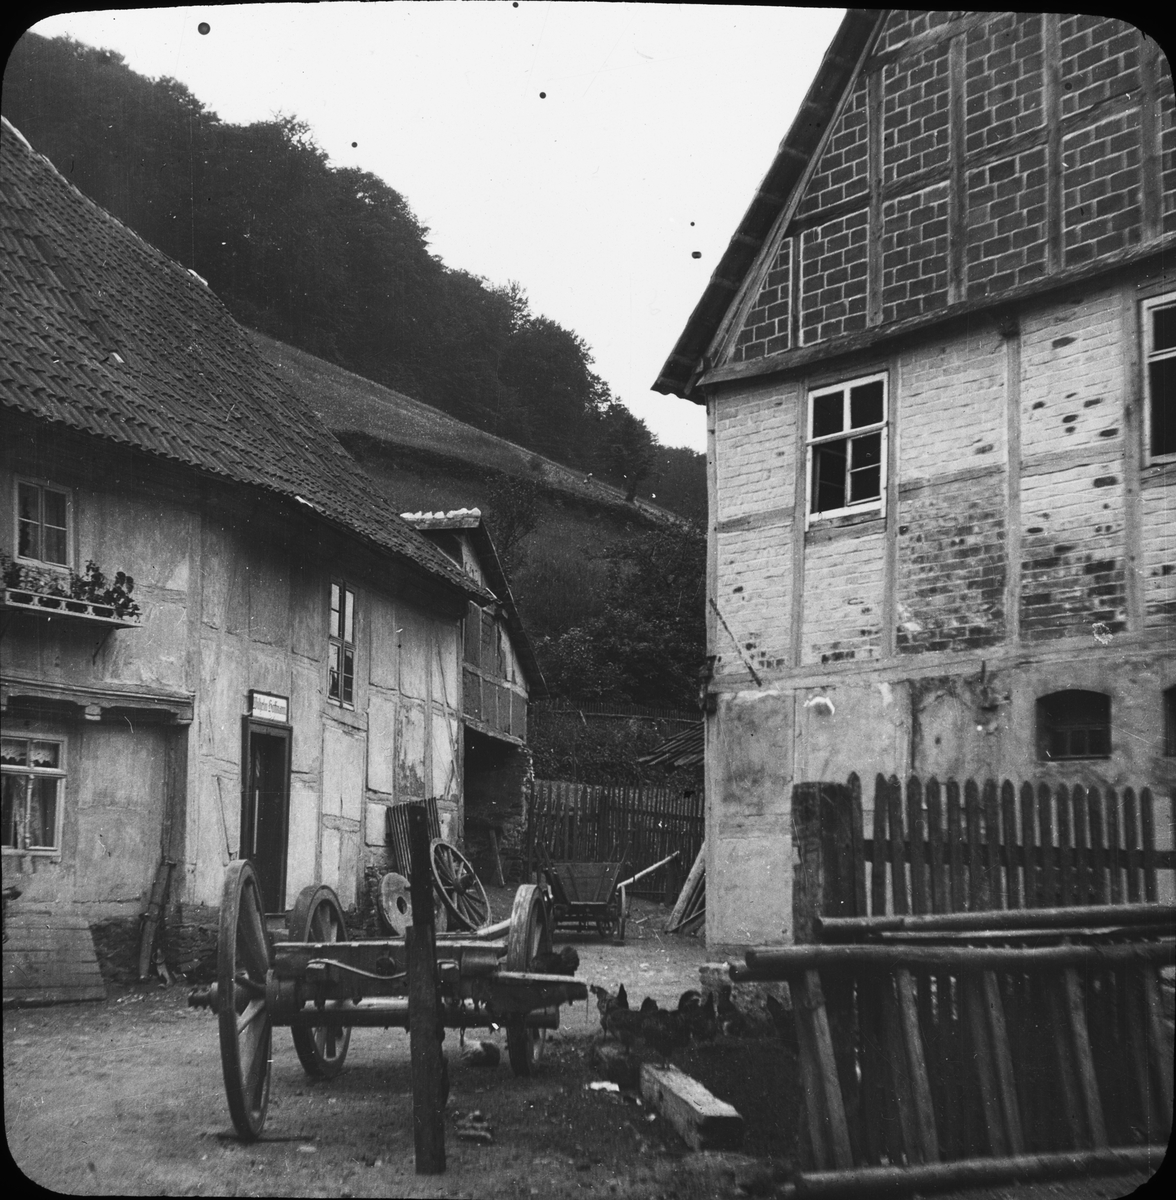 Skioptikonbild med motiv från bakgråd i byn Stolberg, Tyskland.
Bilden har förvarats i kartong märkt: Vårresan 1909. Stolberg 8. X. Text på bild: "Stolberg im Harz".